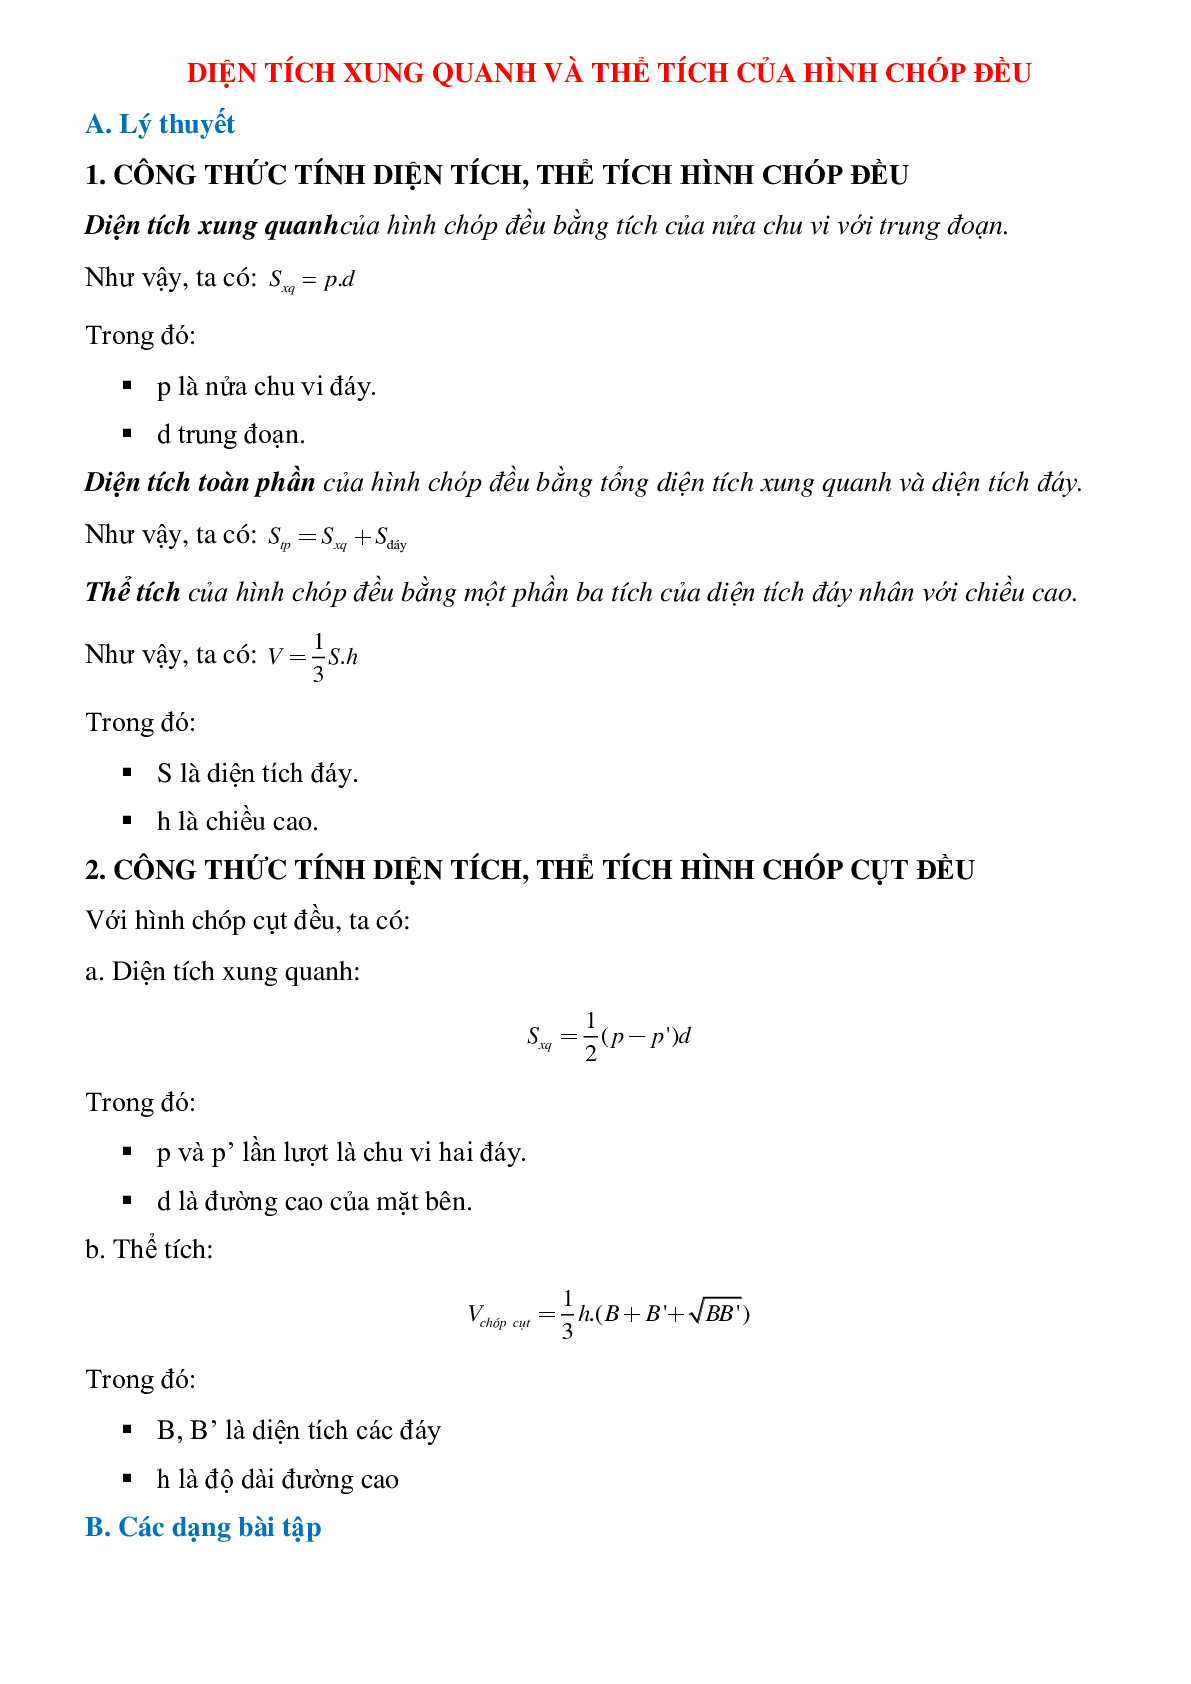 50 Bài tập Diện tích xung quanh của hình chóp đều (có đáp án)- Toán 8 (trang 1)